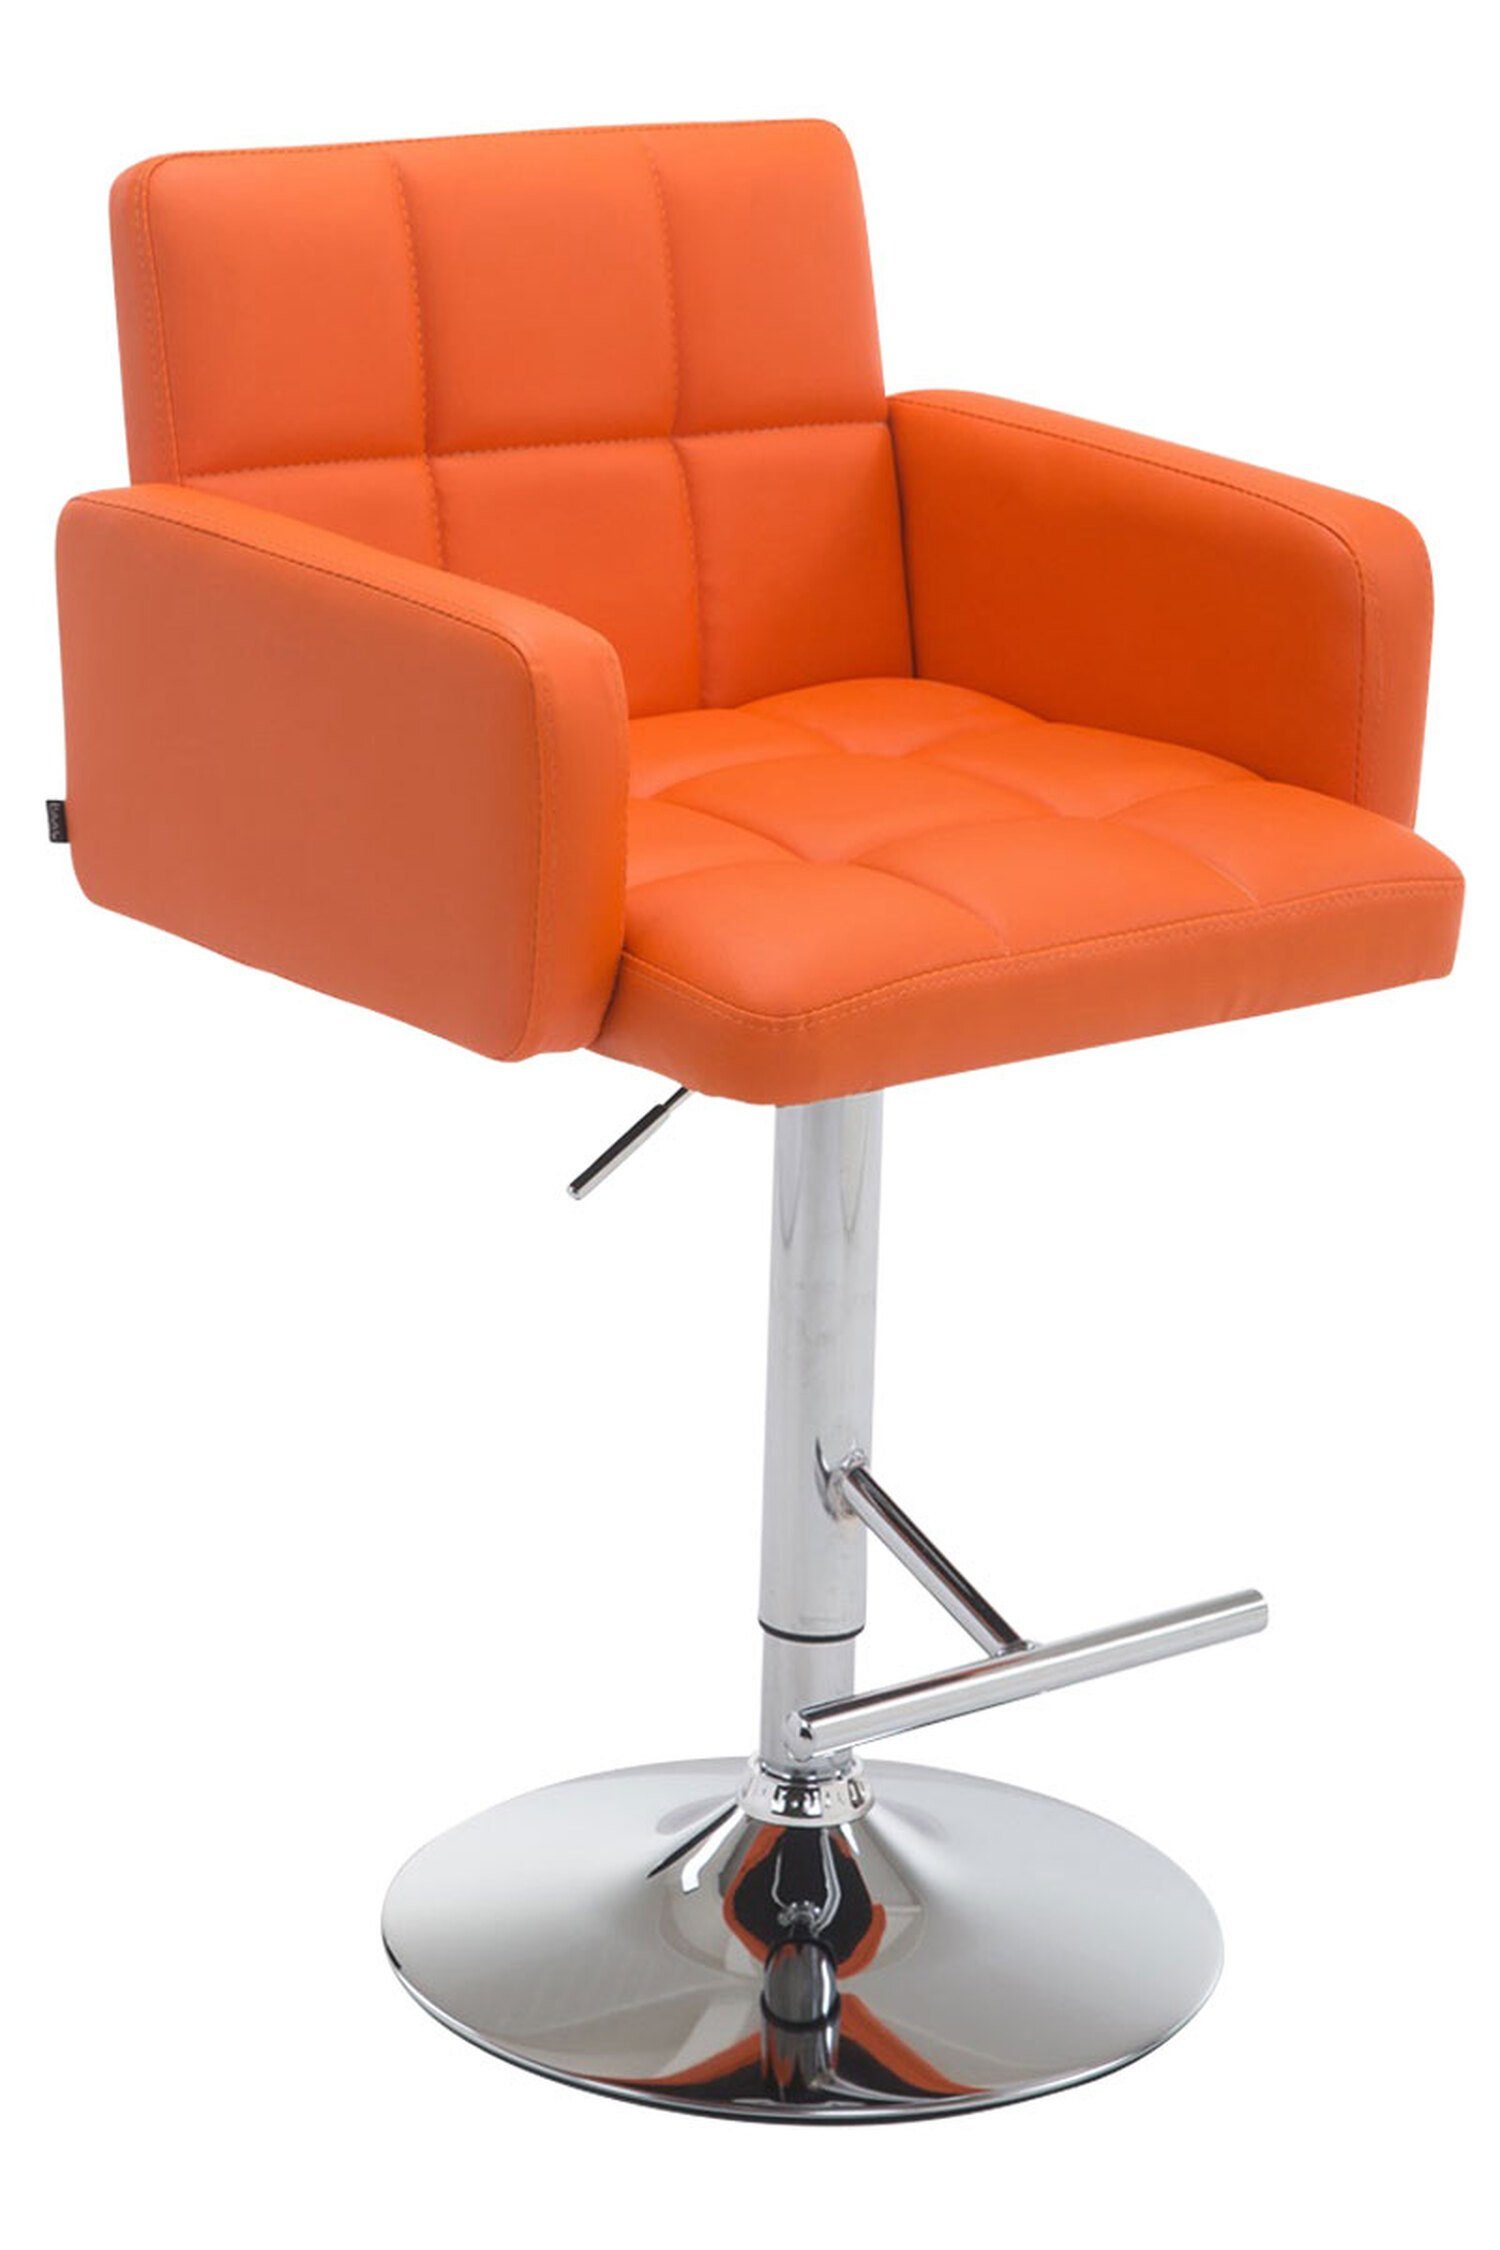 - - Sitzfläche: 360° für (mit Rückenlehne höhenverstellbar Gestell: Theke chrom - Hocker Orange Küche), Angeles TPFLiving & Los Metall hoher drehbar Kunstleder - Barhocker